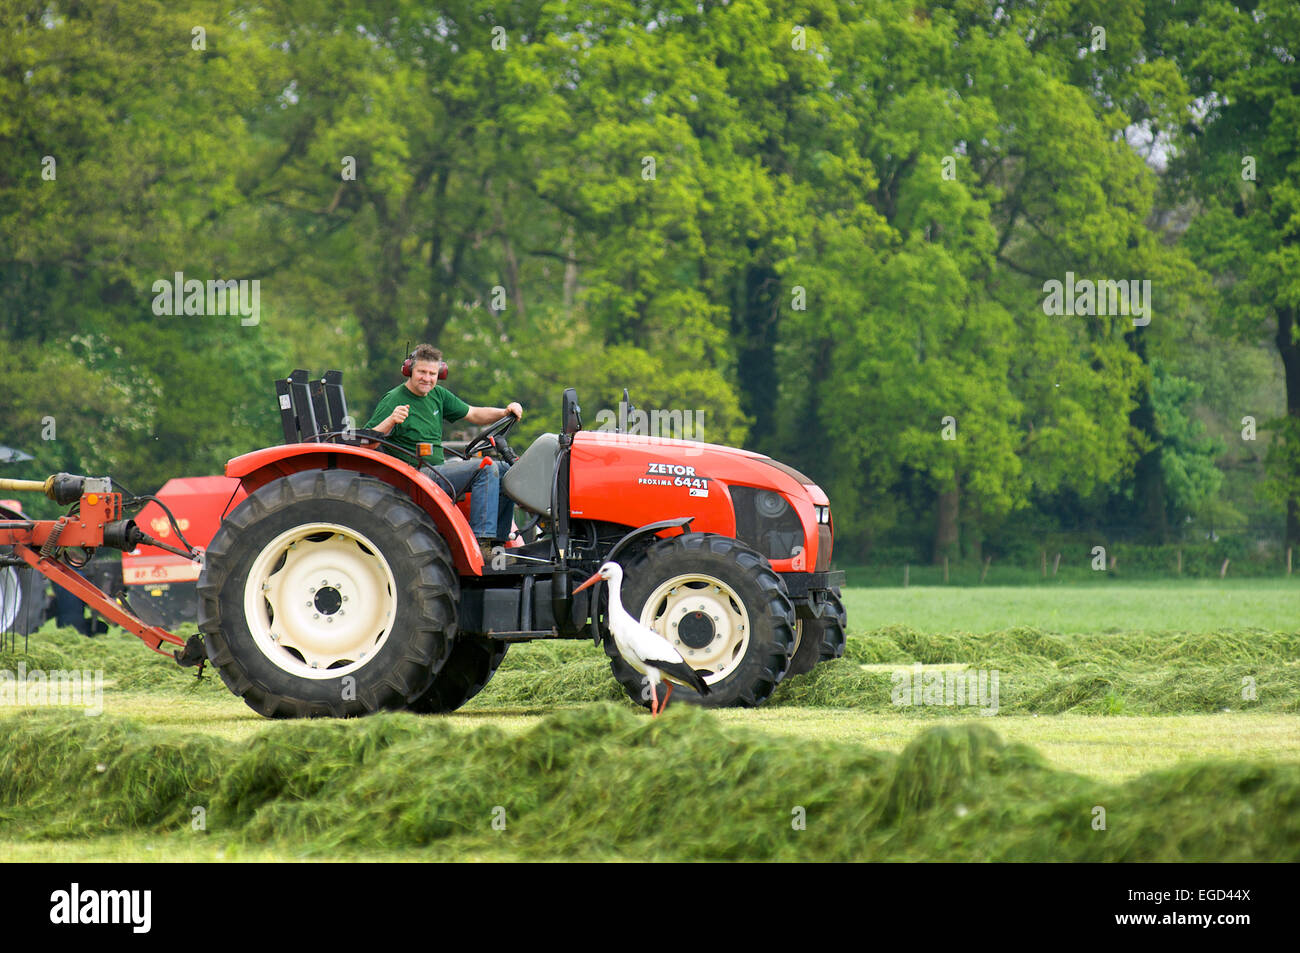 Ein Bauer auf seinem Traktor blickt auf ein Storch, der Suche nach Nahrung an Orten wo ein Traktor den Rasen mähen hat Stockfoto